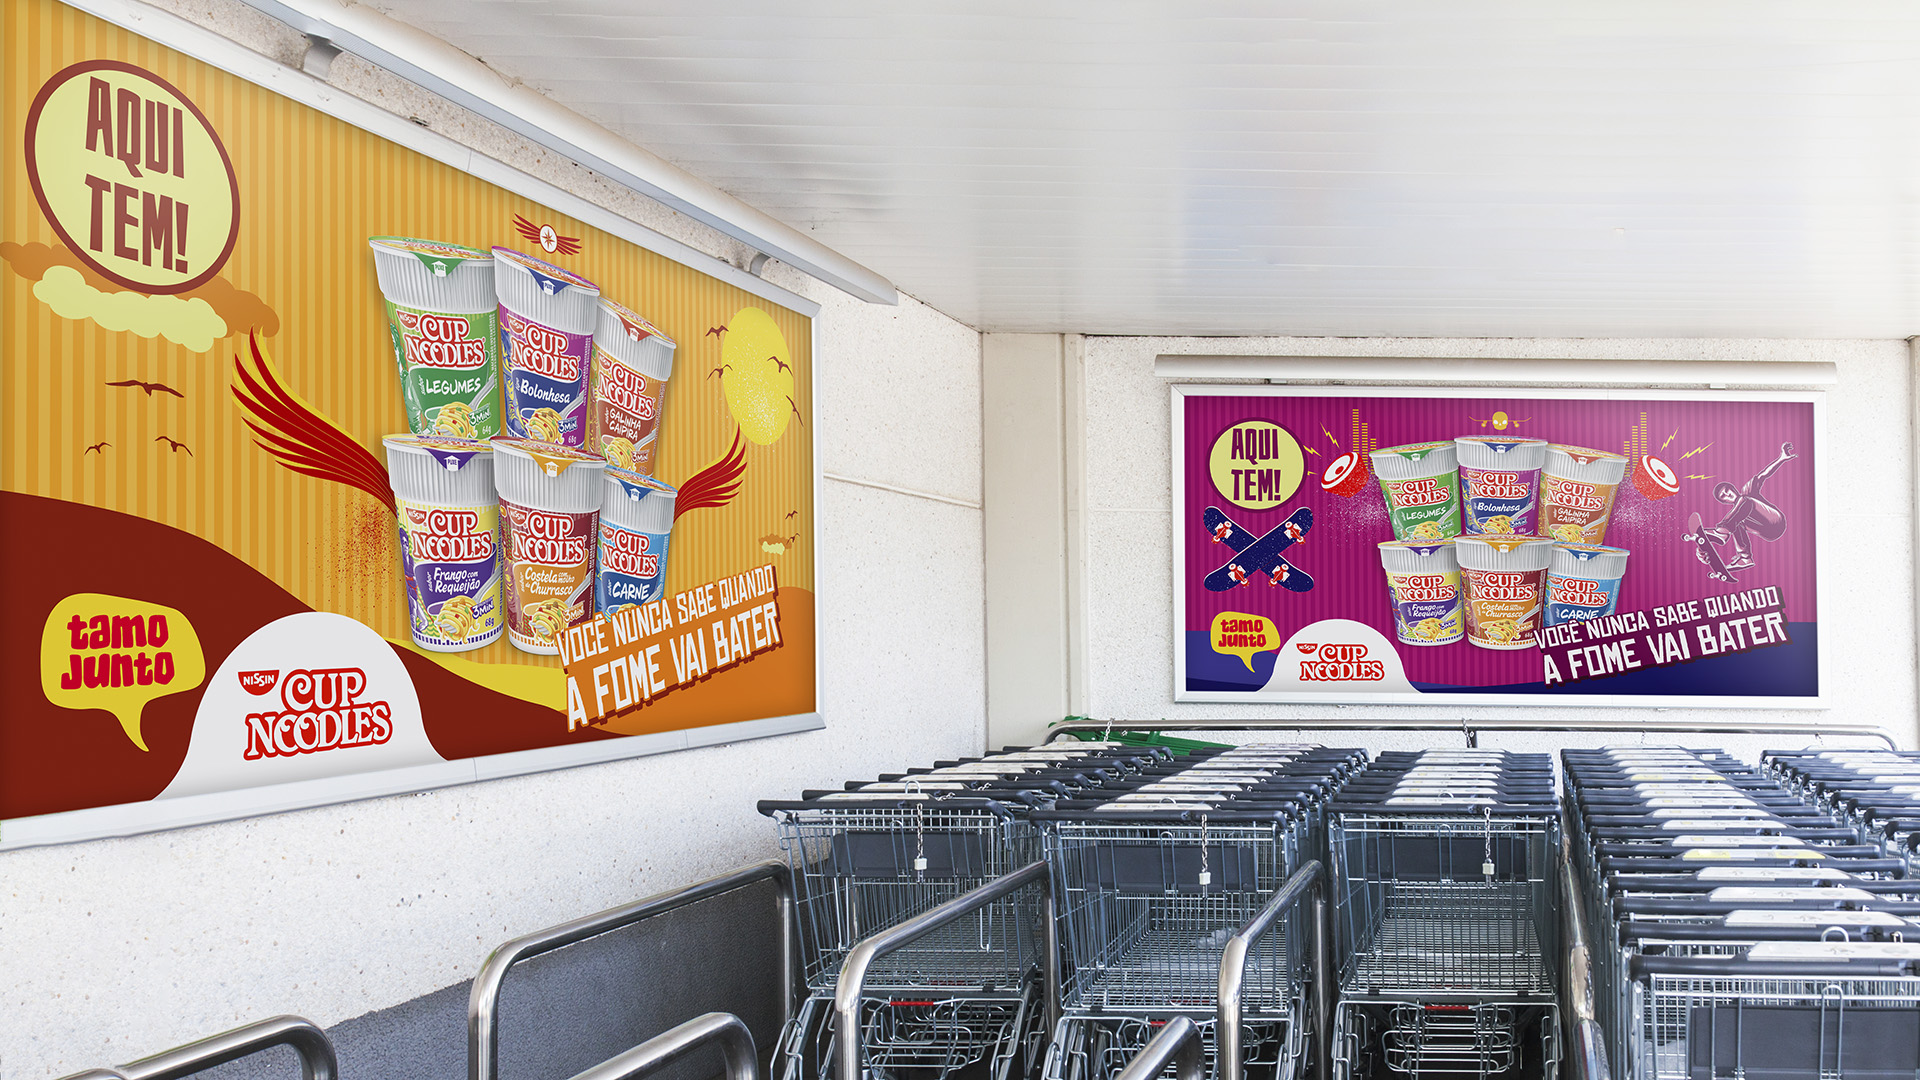 Imagem de painéis de supermercado com comunicação Cup Noodles Nissin.